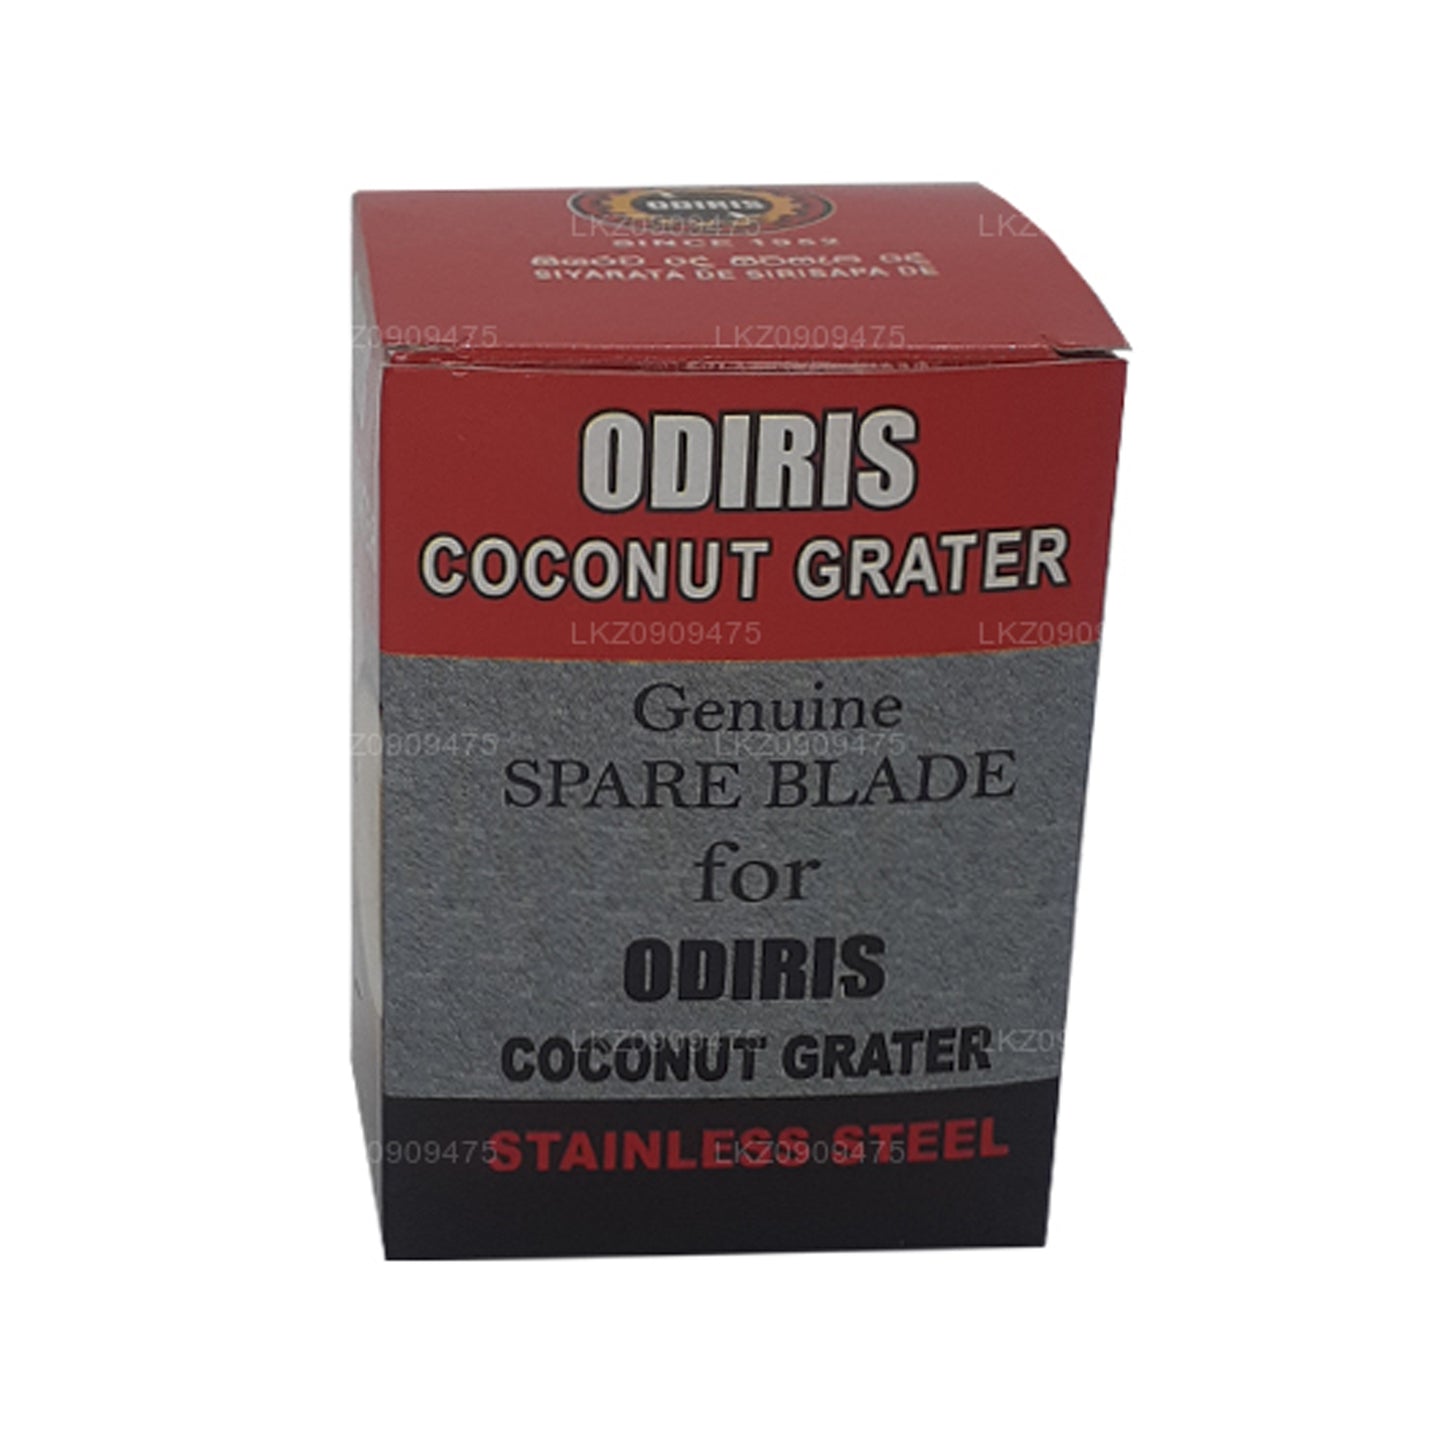 Lame de rechange pour grattoir à noix de coco Odiris (5,5 cm)